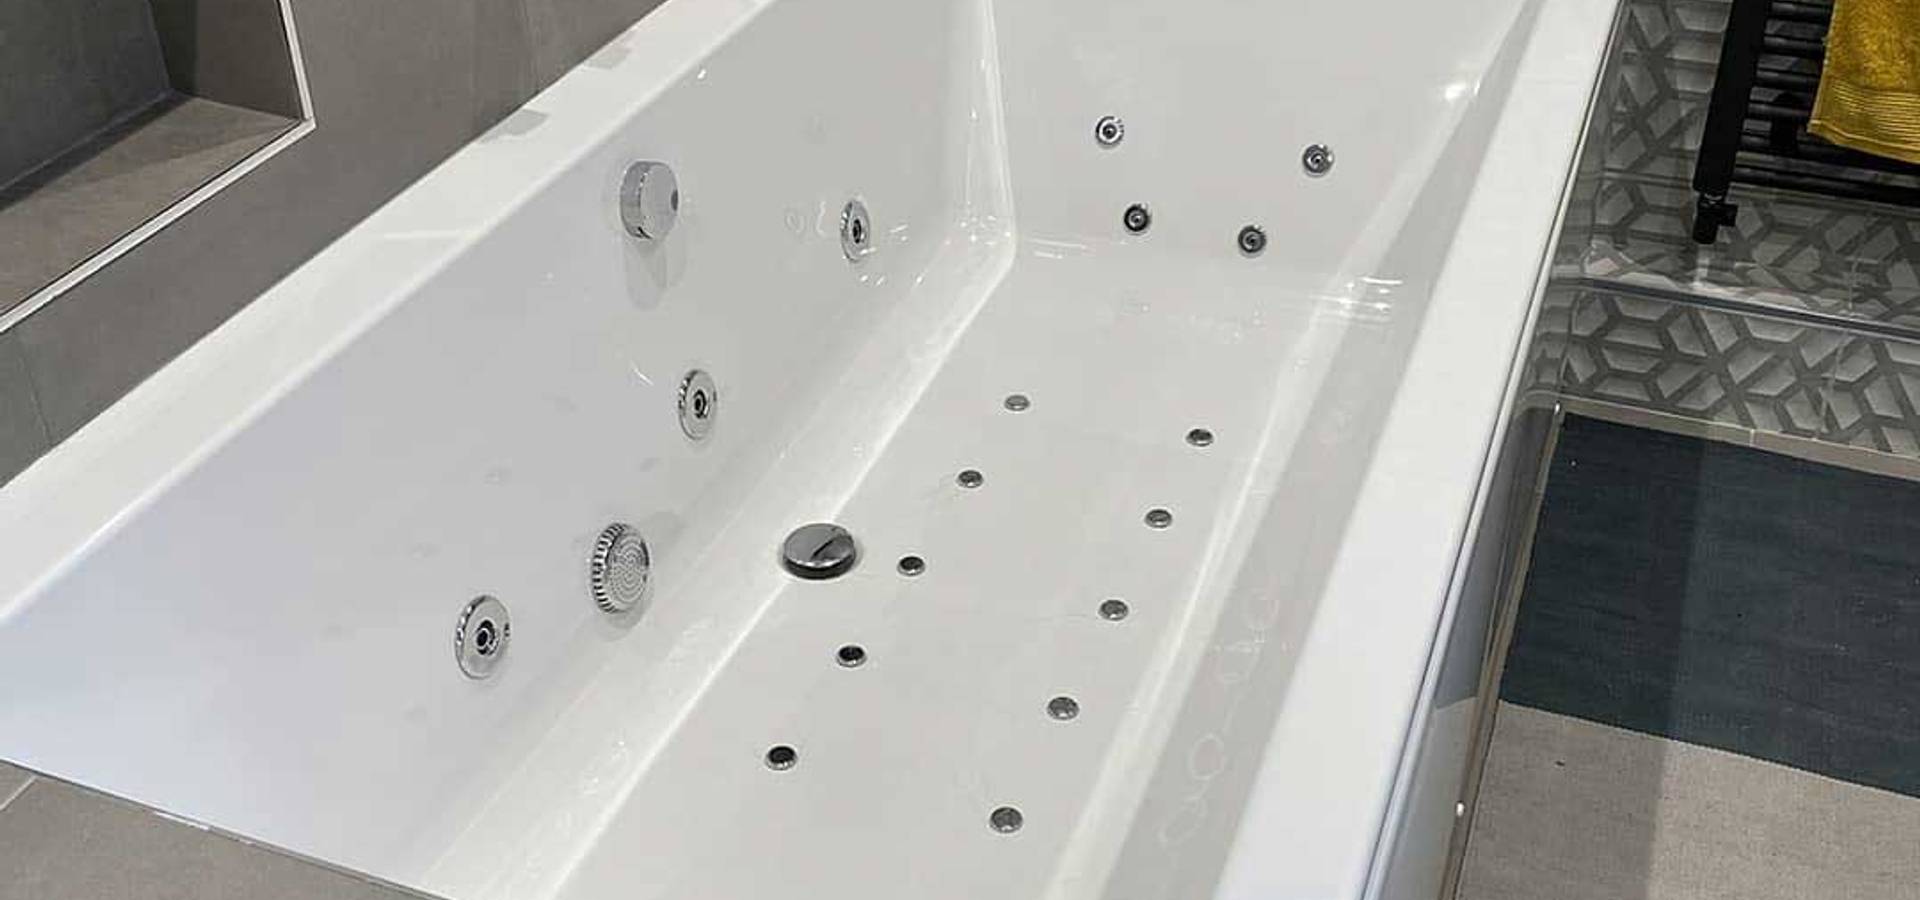 Bolsa Escribe email sarcoma The Whirlpool Bathshop: Accesorios para baño en Southampton, UK | homify